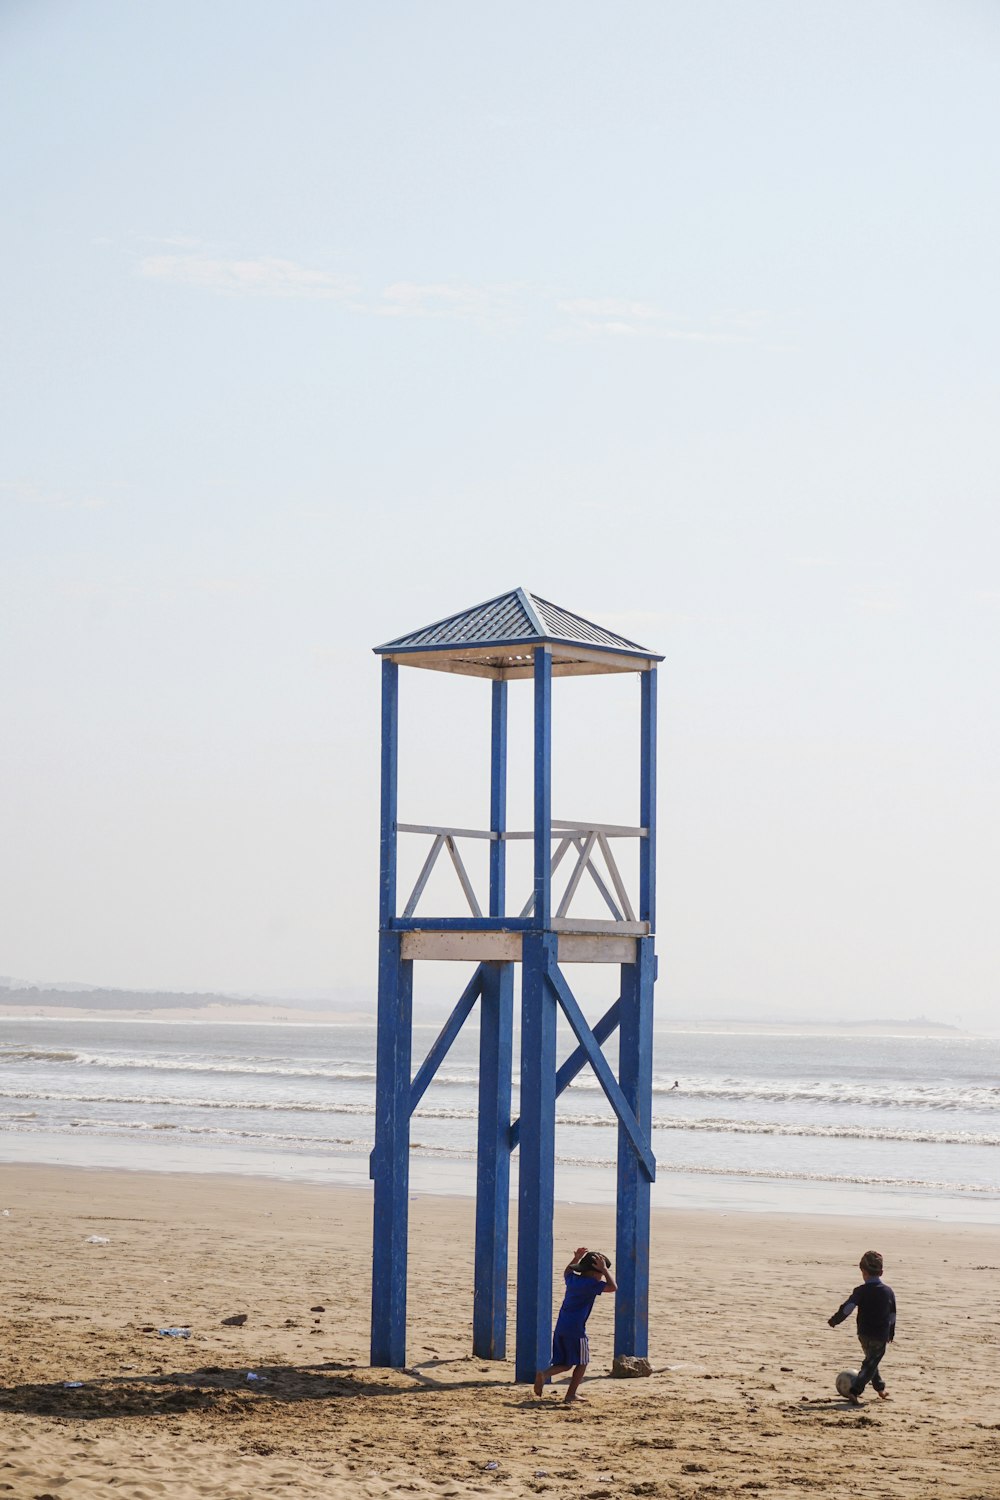 Dos personas caminando al lado de la torre en la playa